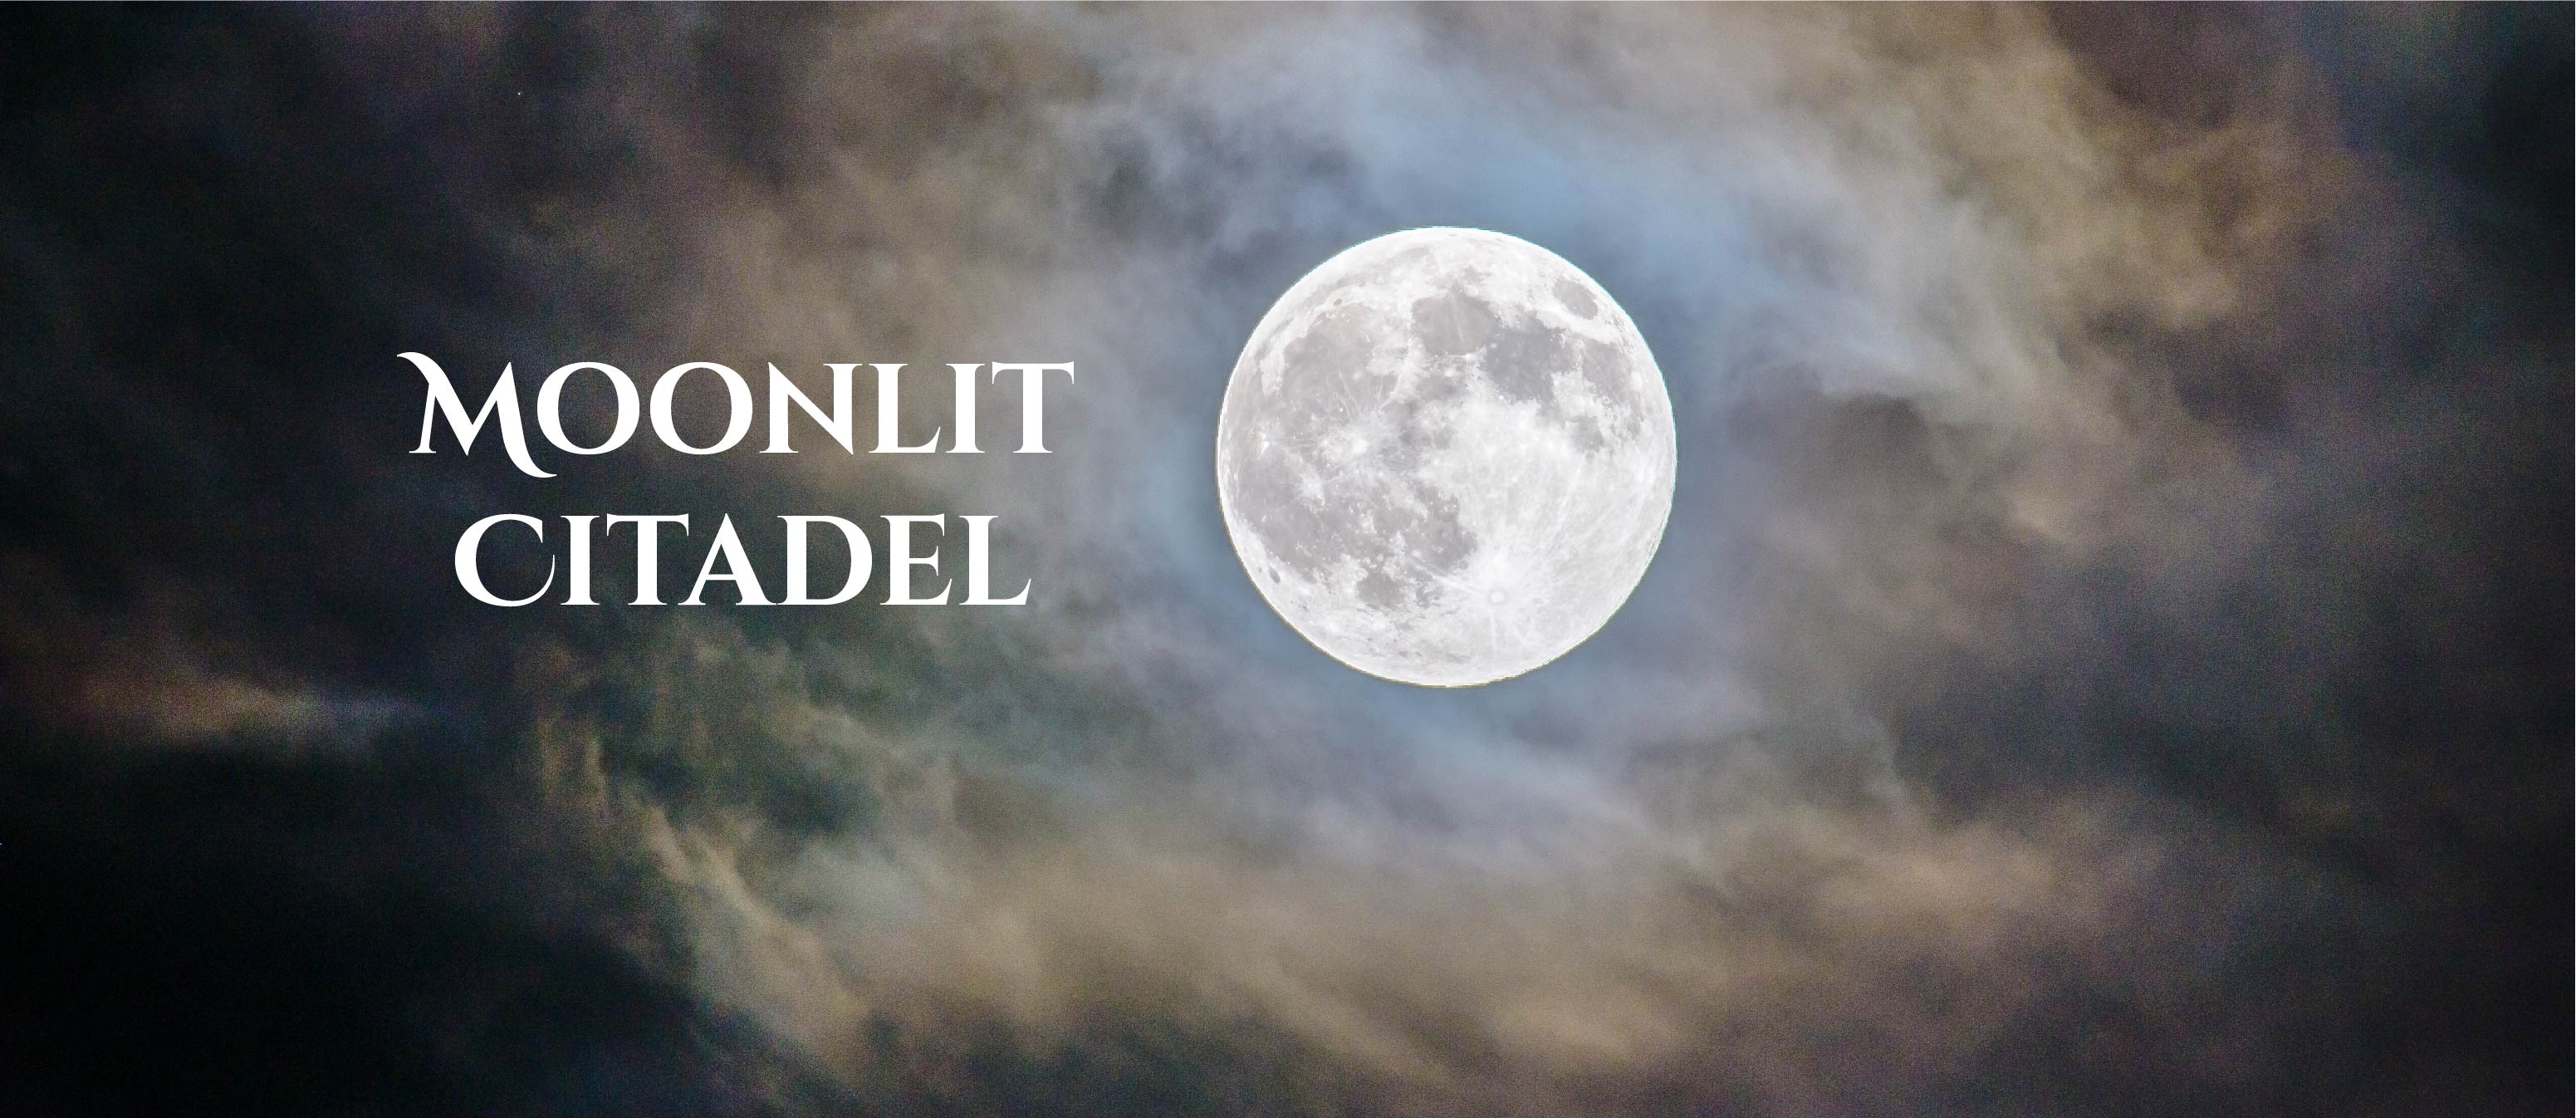 Moonlit Citadel